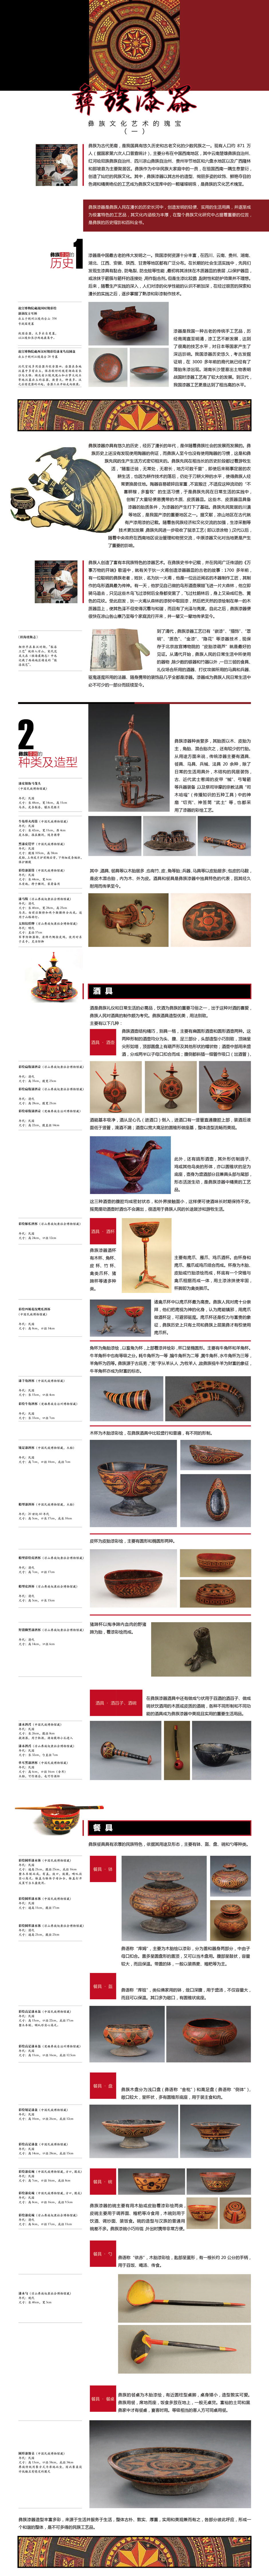 彝族漆器——彝族文化艺术的瑰宝（一）（上传版）.jpg